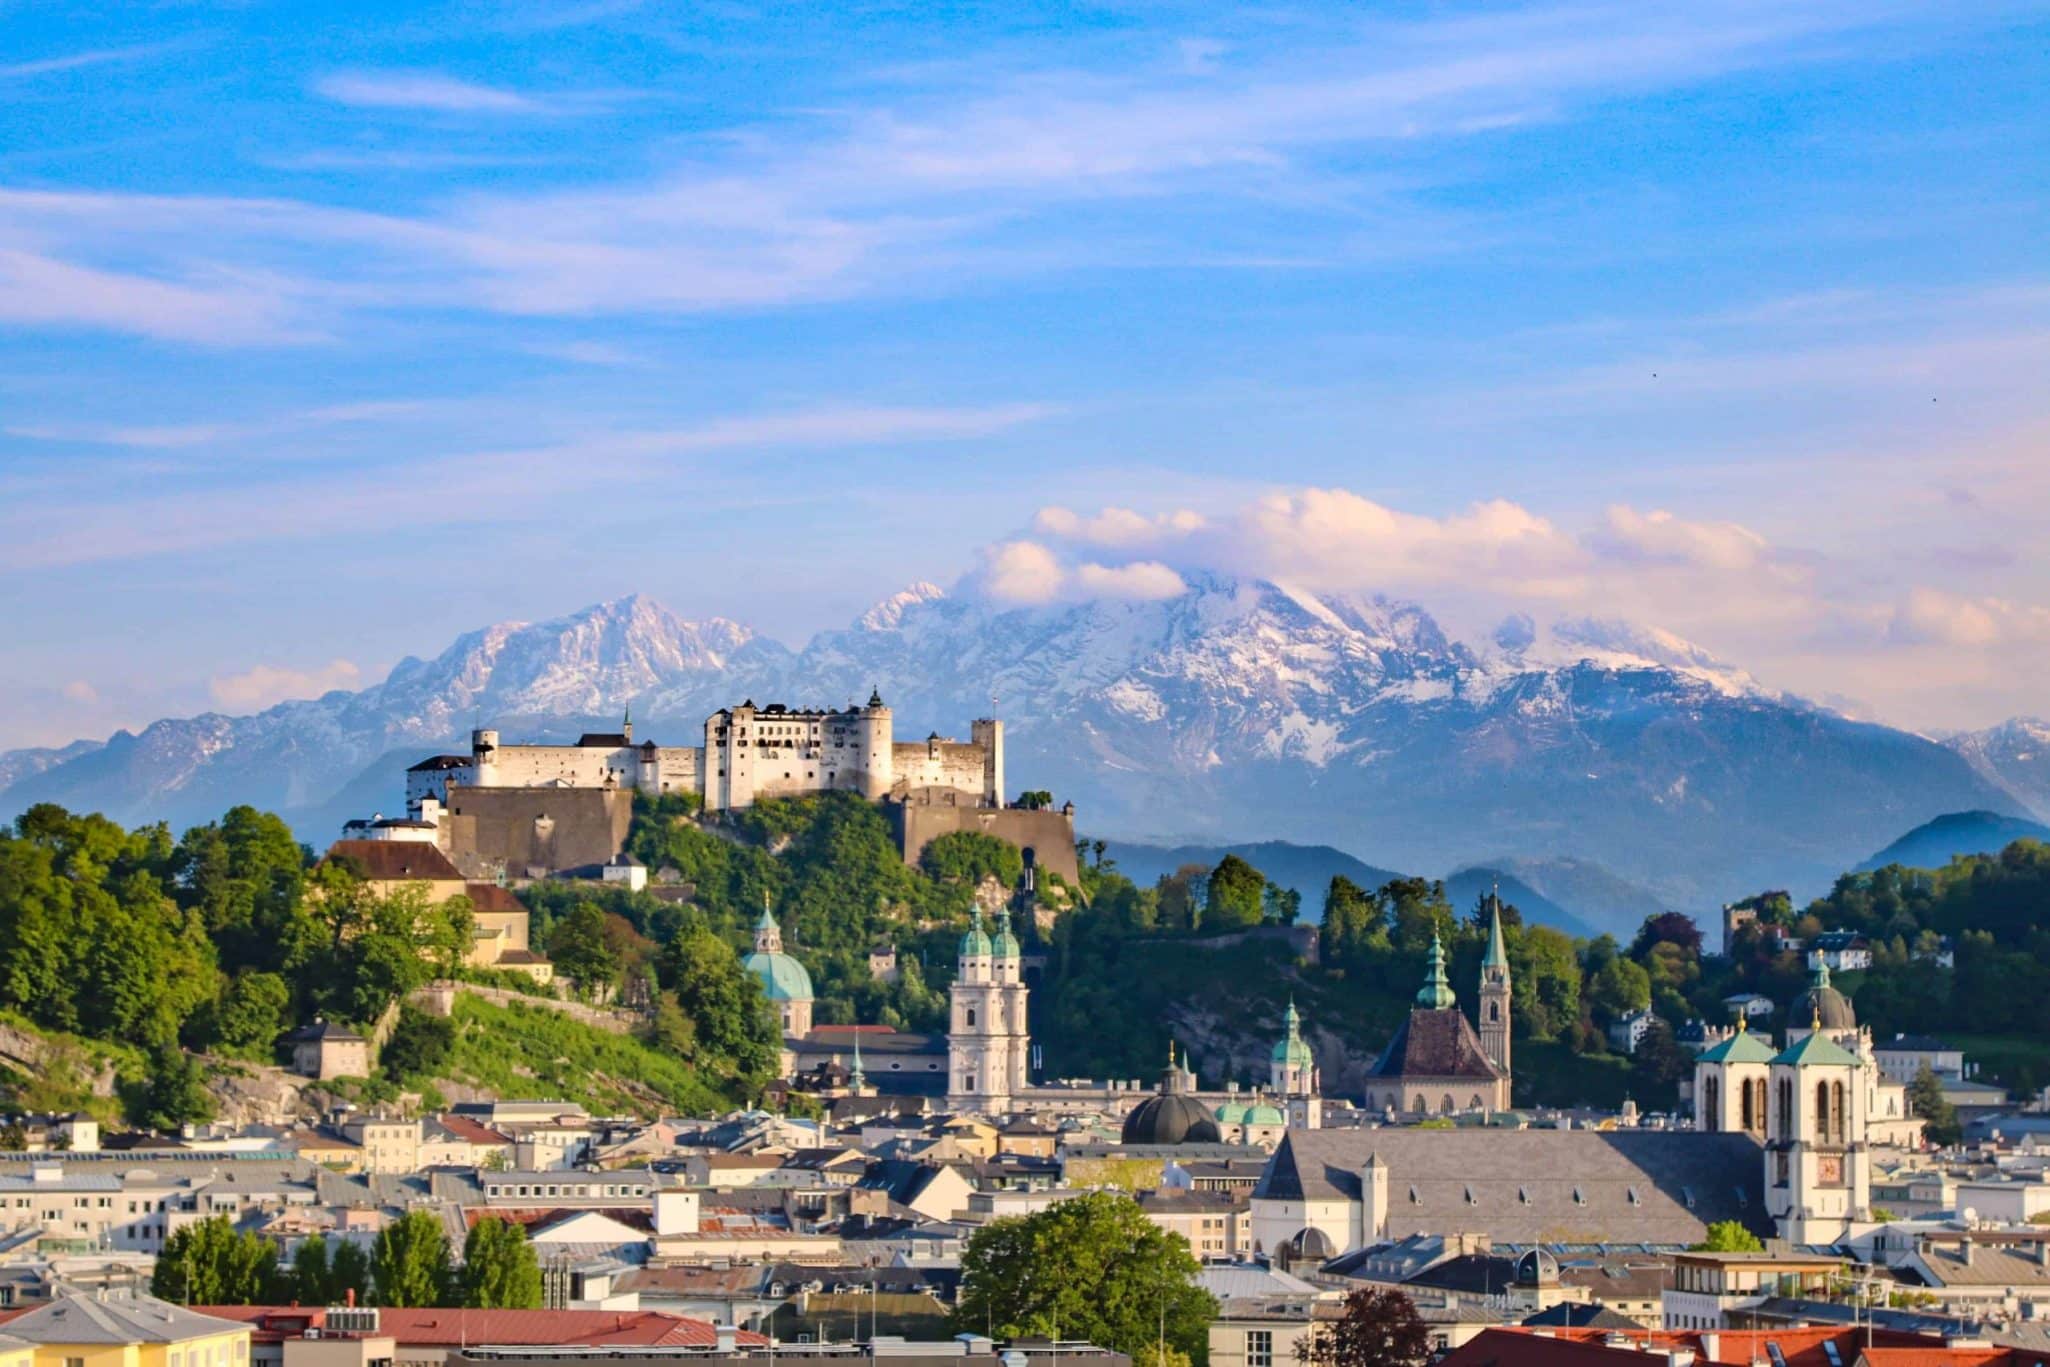 Austria Trend Hotel has the best view in Salzburg